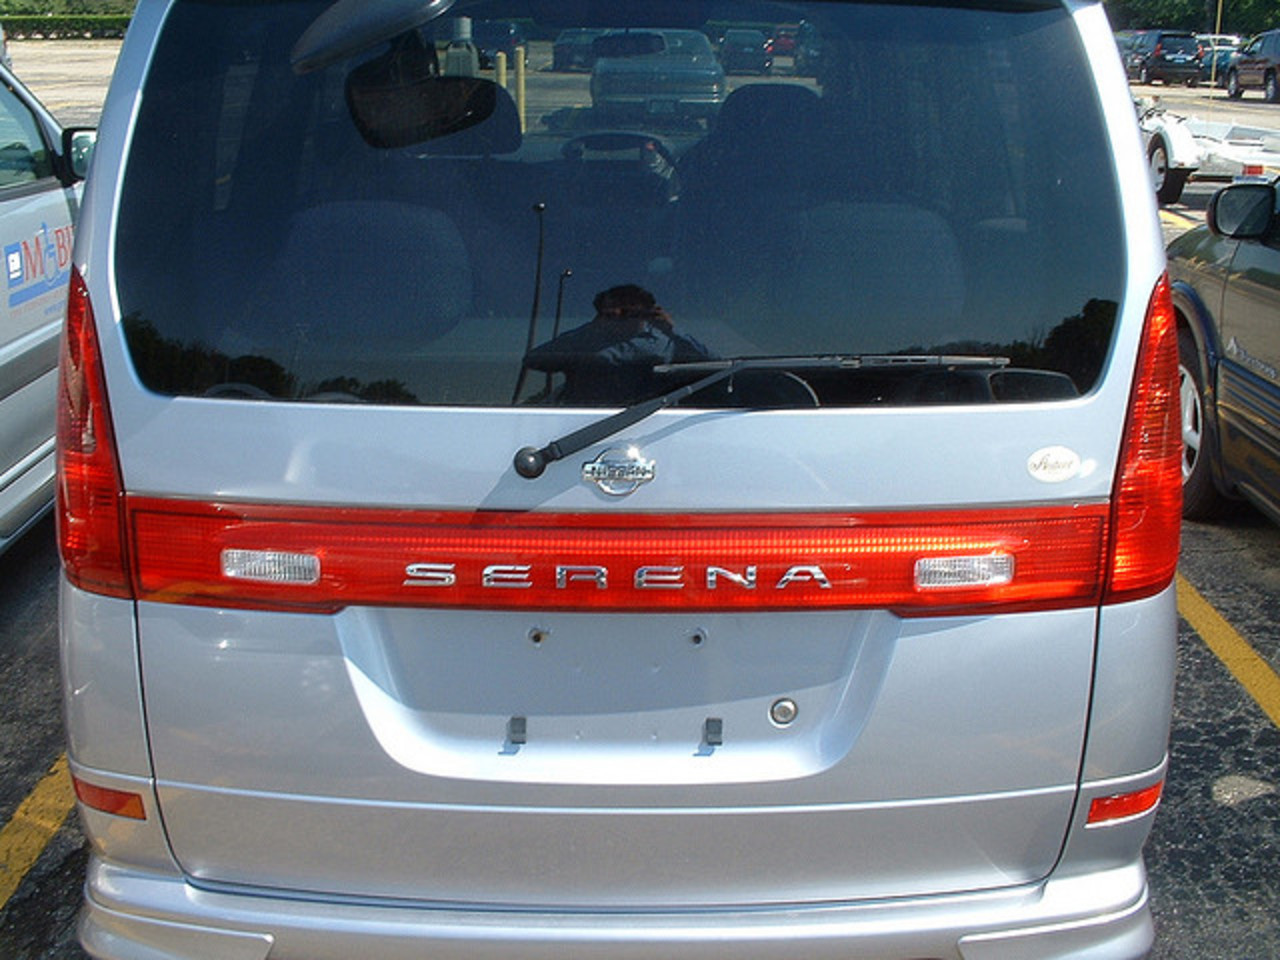 Nissan Serena Autech | Flickr - Photo Sharing!